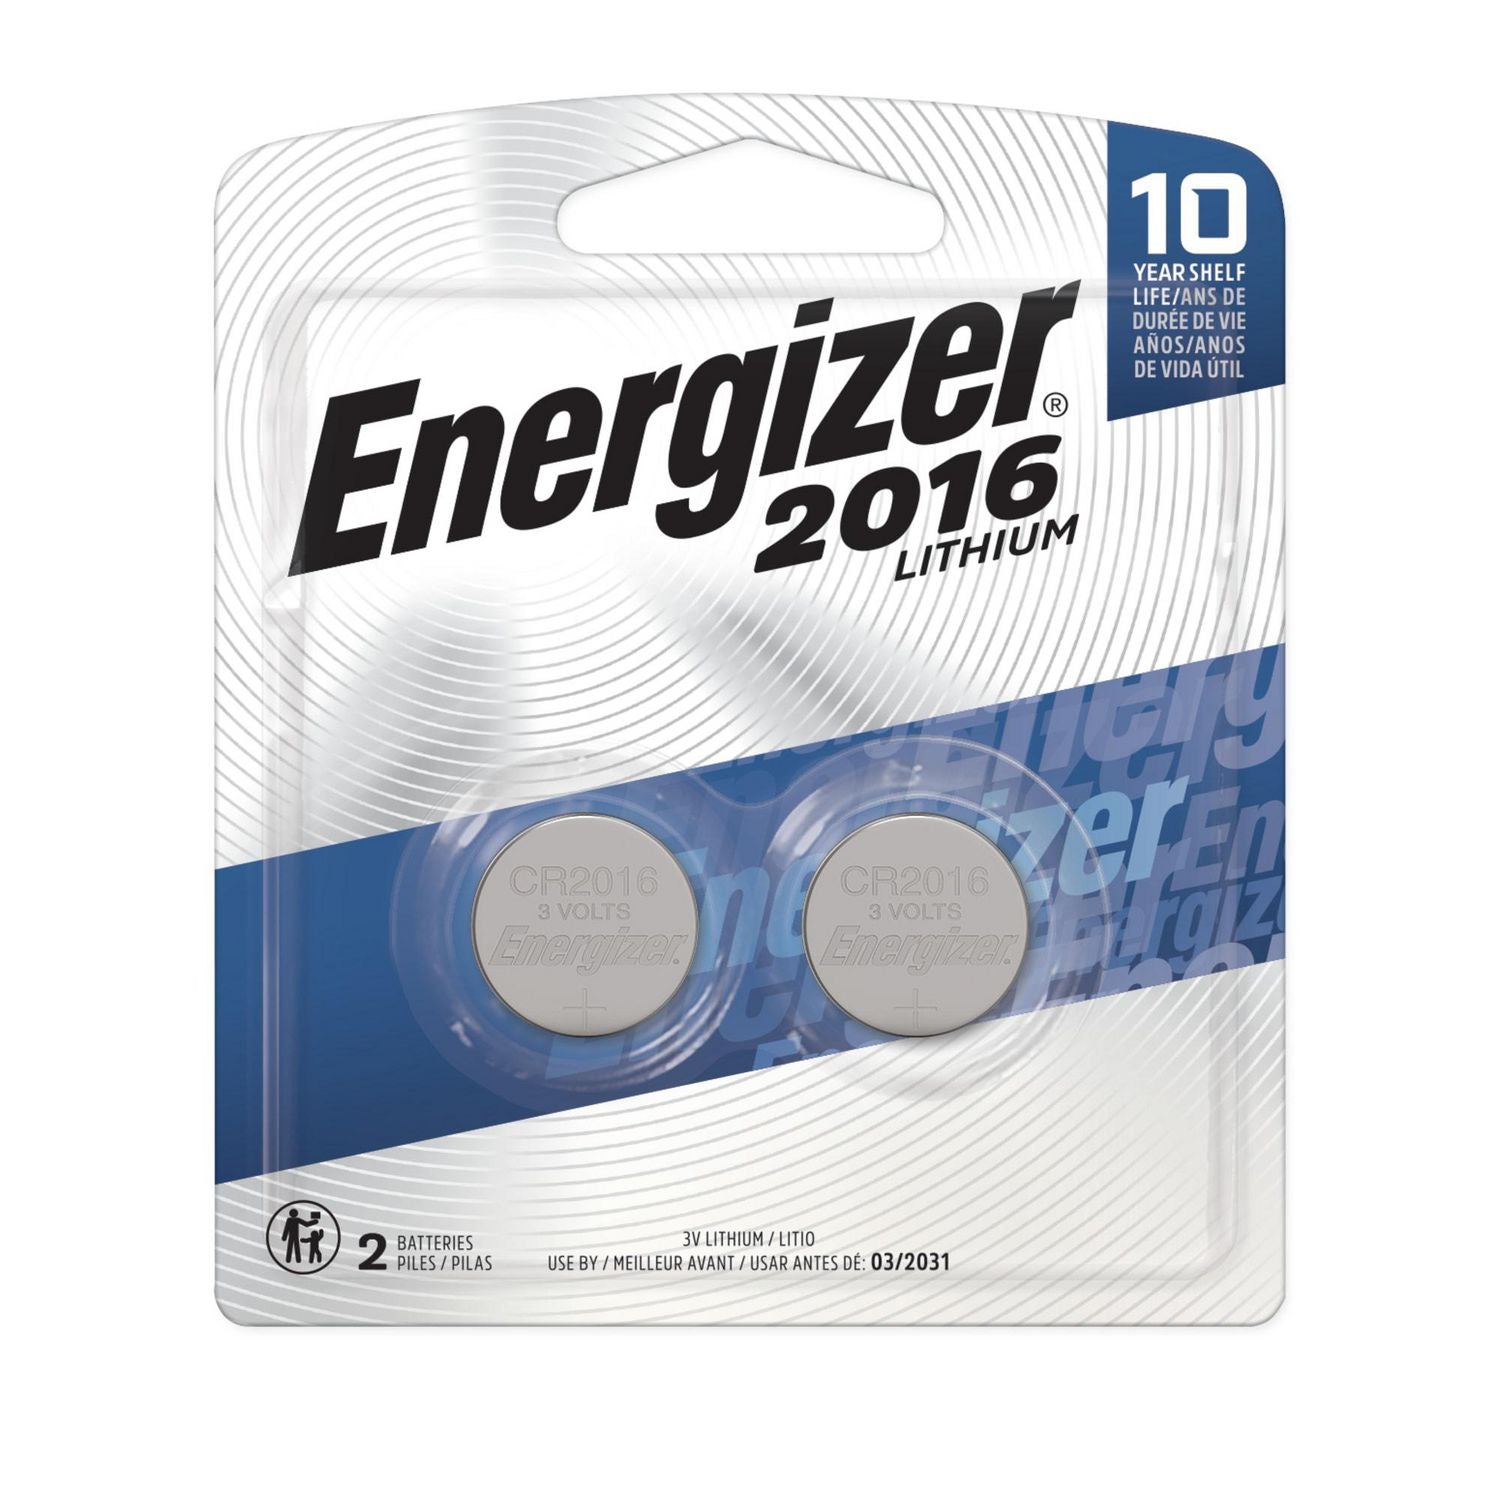 Energizer Lithium 2016 3V (2 Pack)